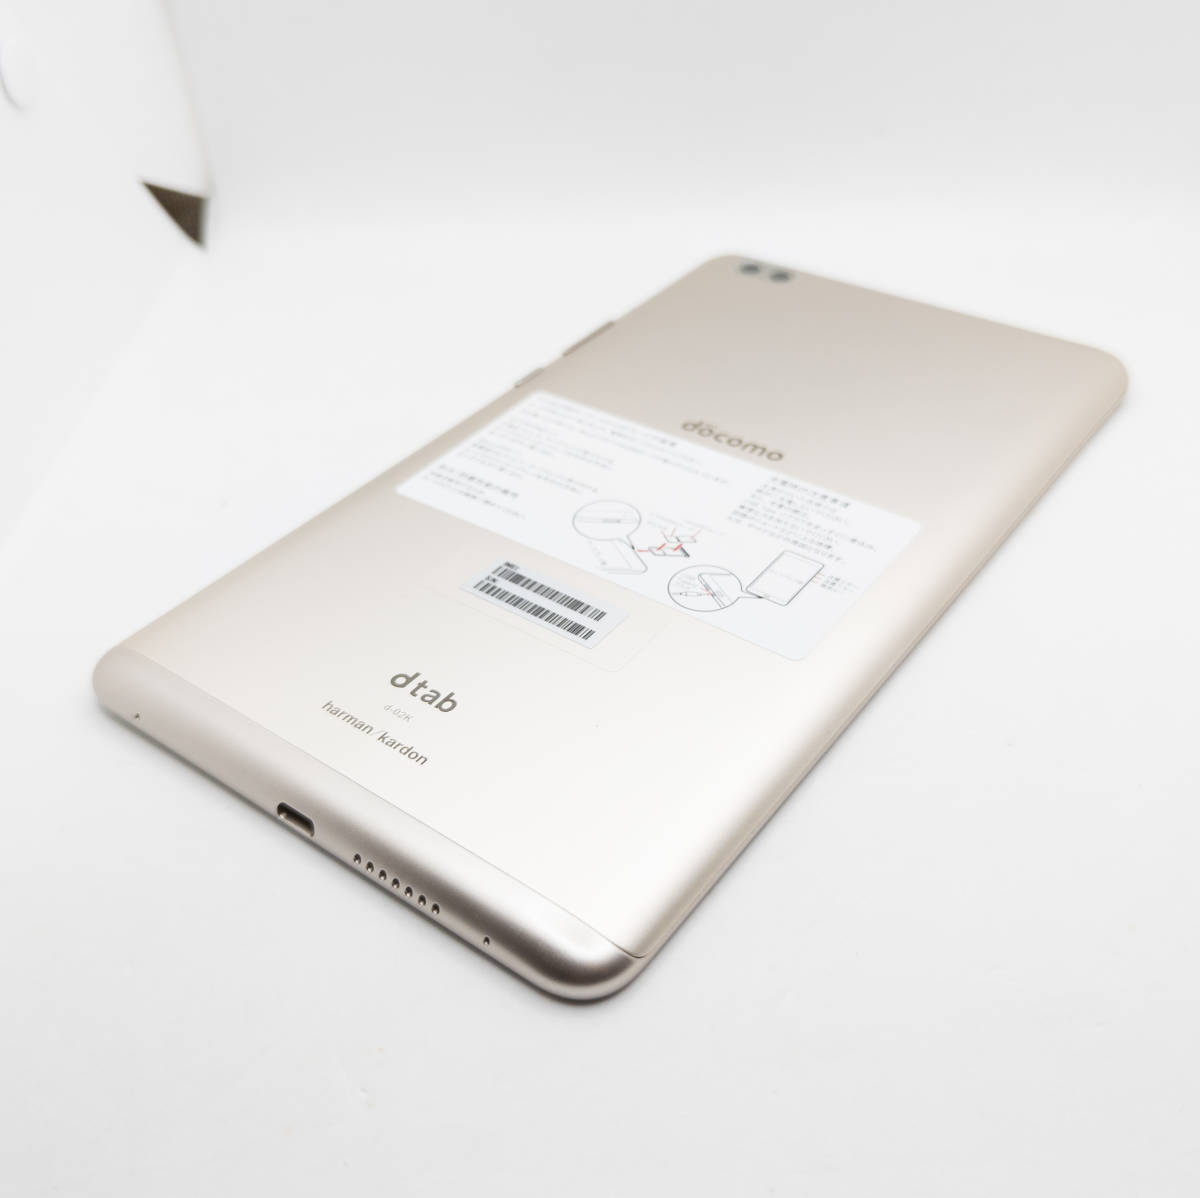 [ST-02577] Huawei dtab Compact d-02K ゴールド タブレット ファーウェイ Android アンドロイド タブ docomo 本体_画像3